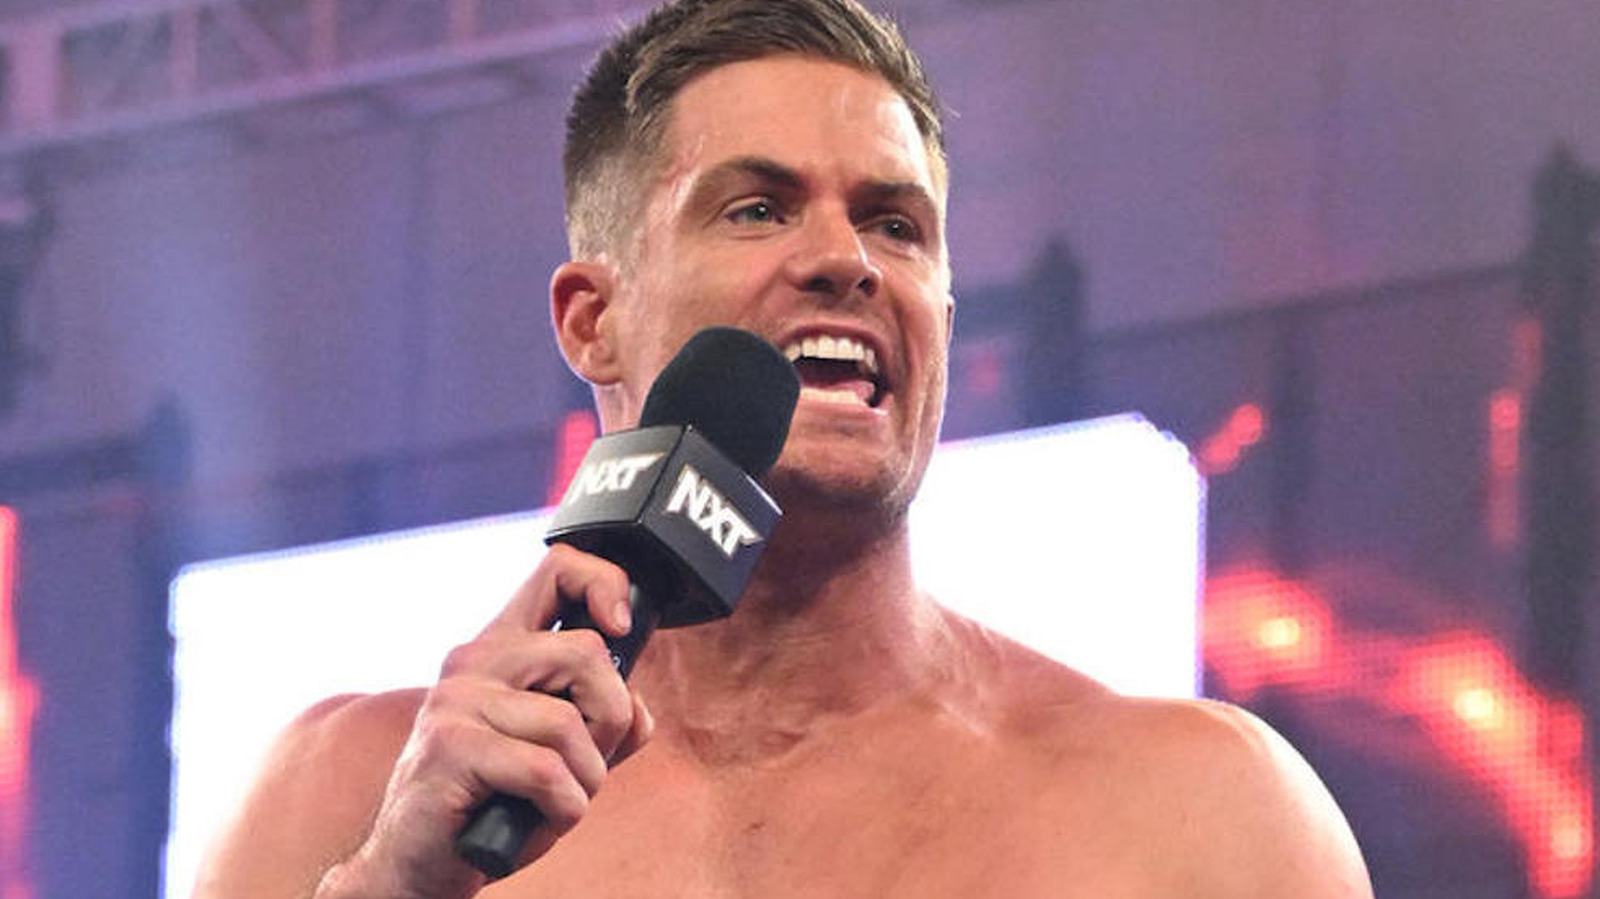 Grayson Waller quiere convertir el título estadounidense de la WWE en el campeonato australiano